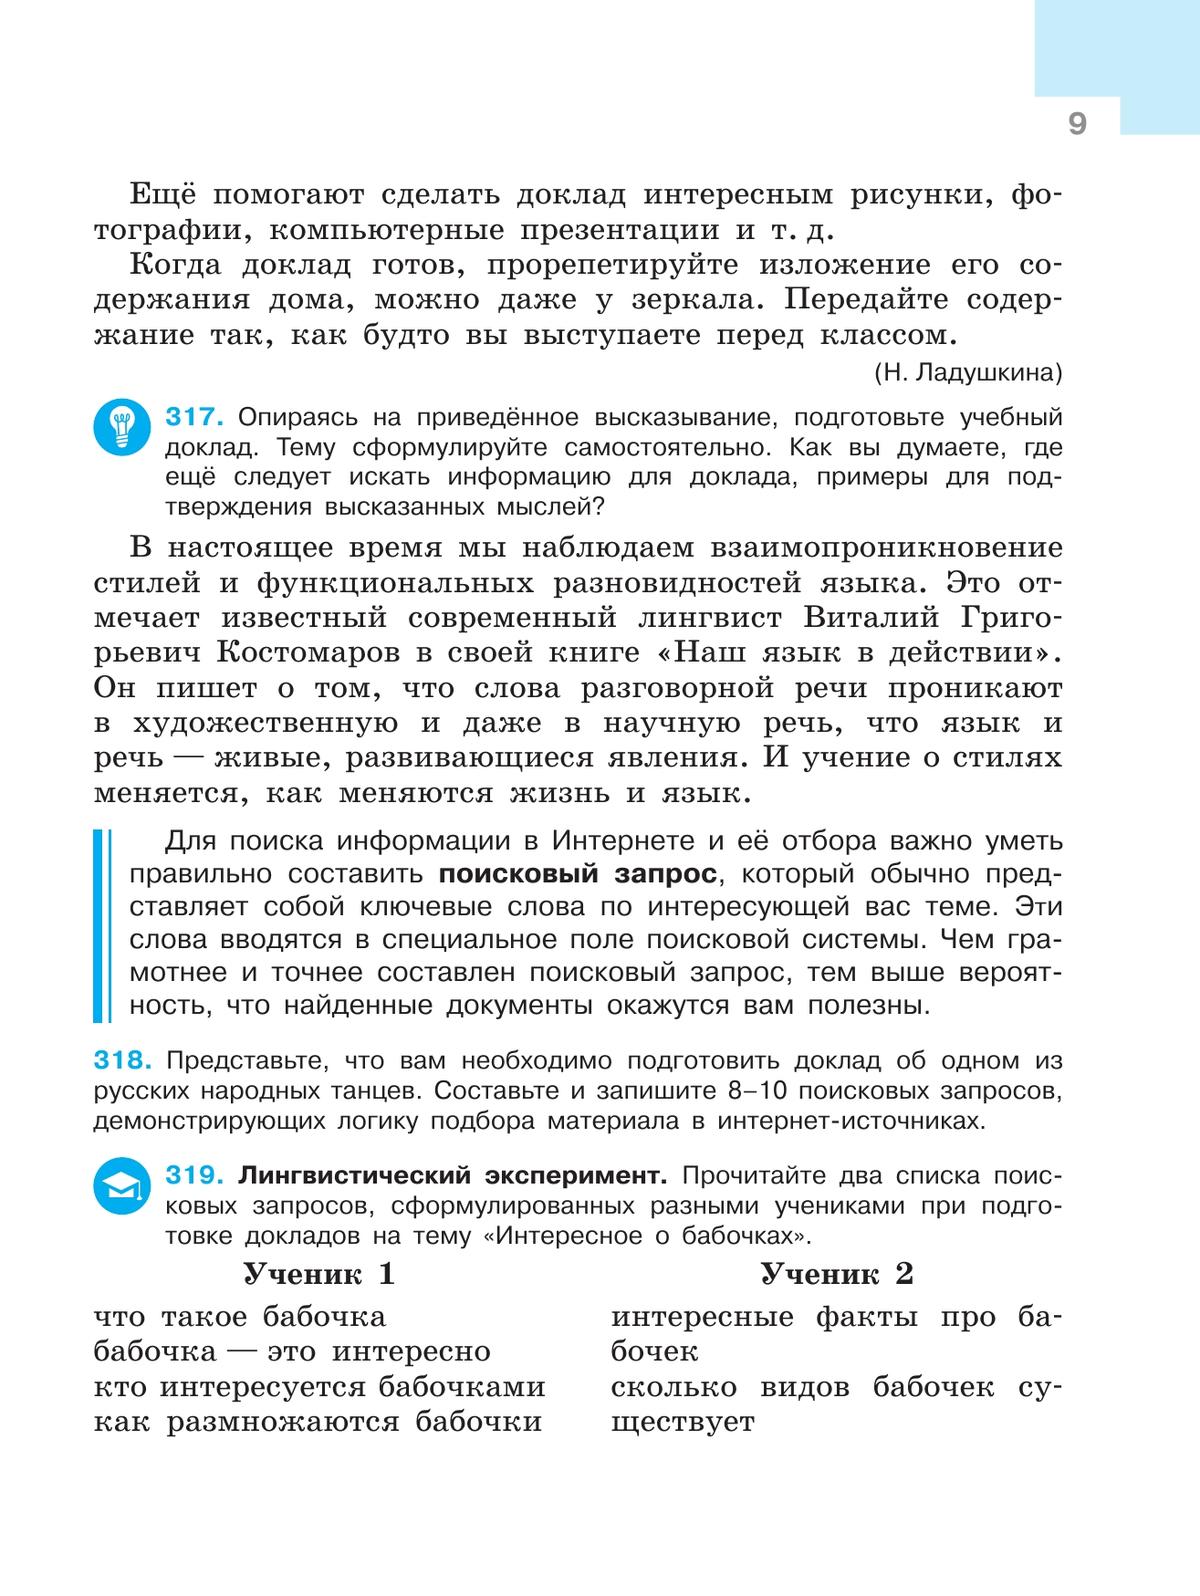 Русский язык. 7 класс. Учебник. В 2 ч. Часть 2 5